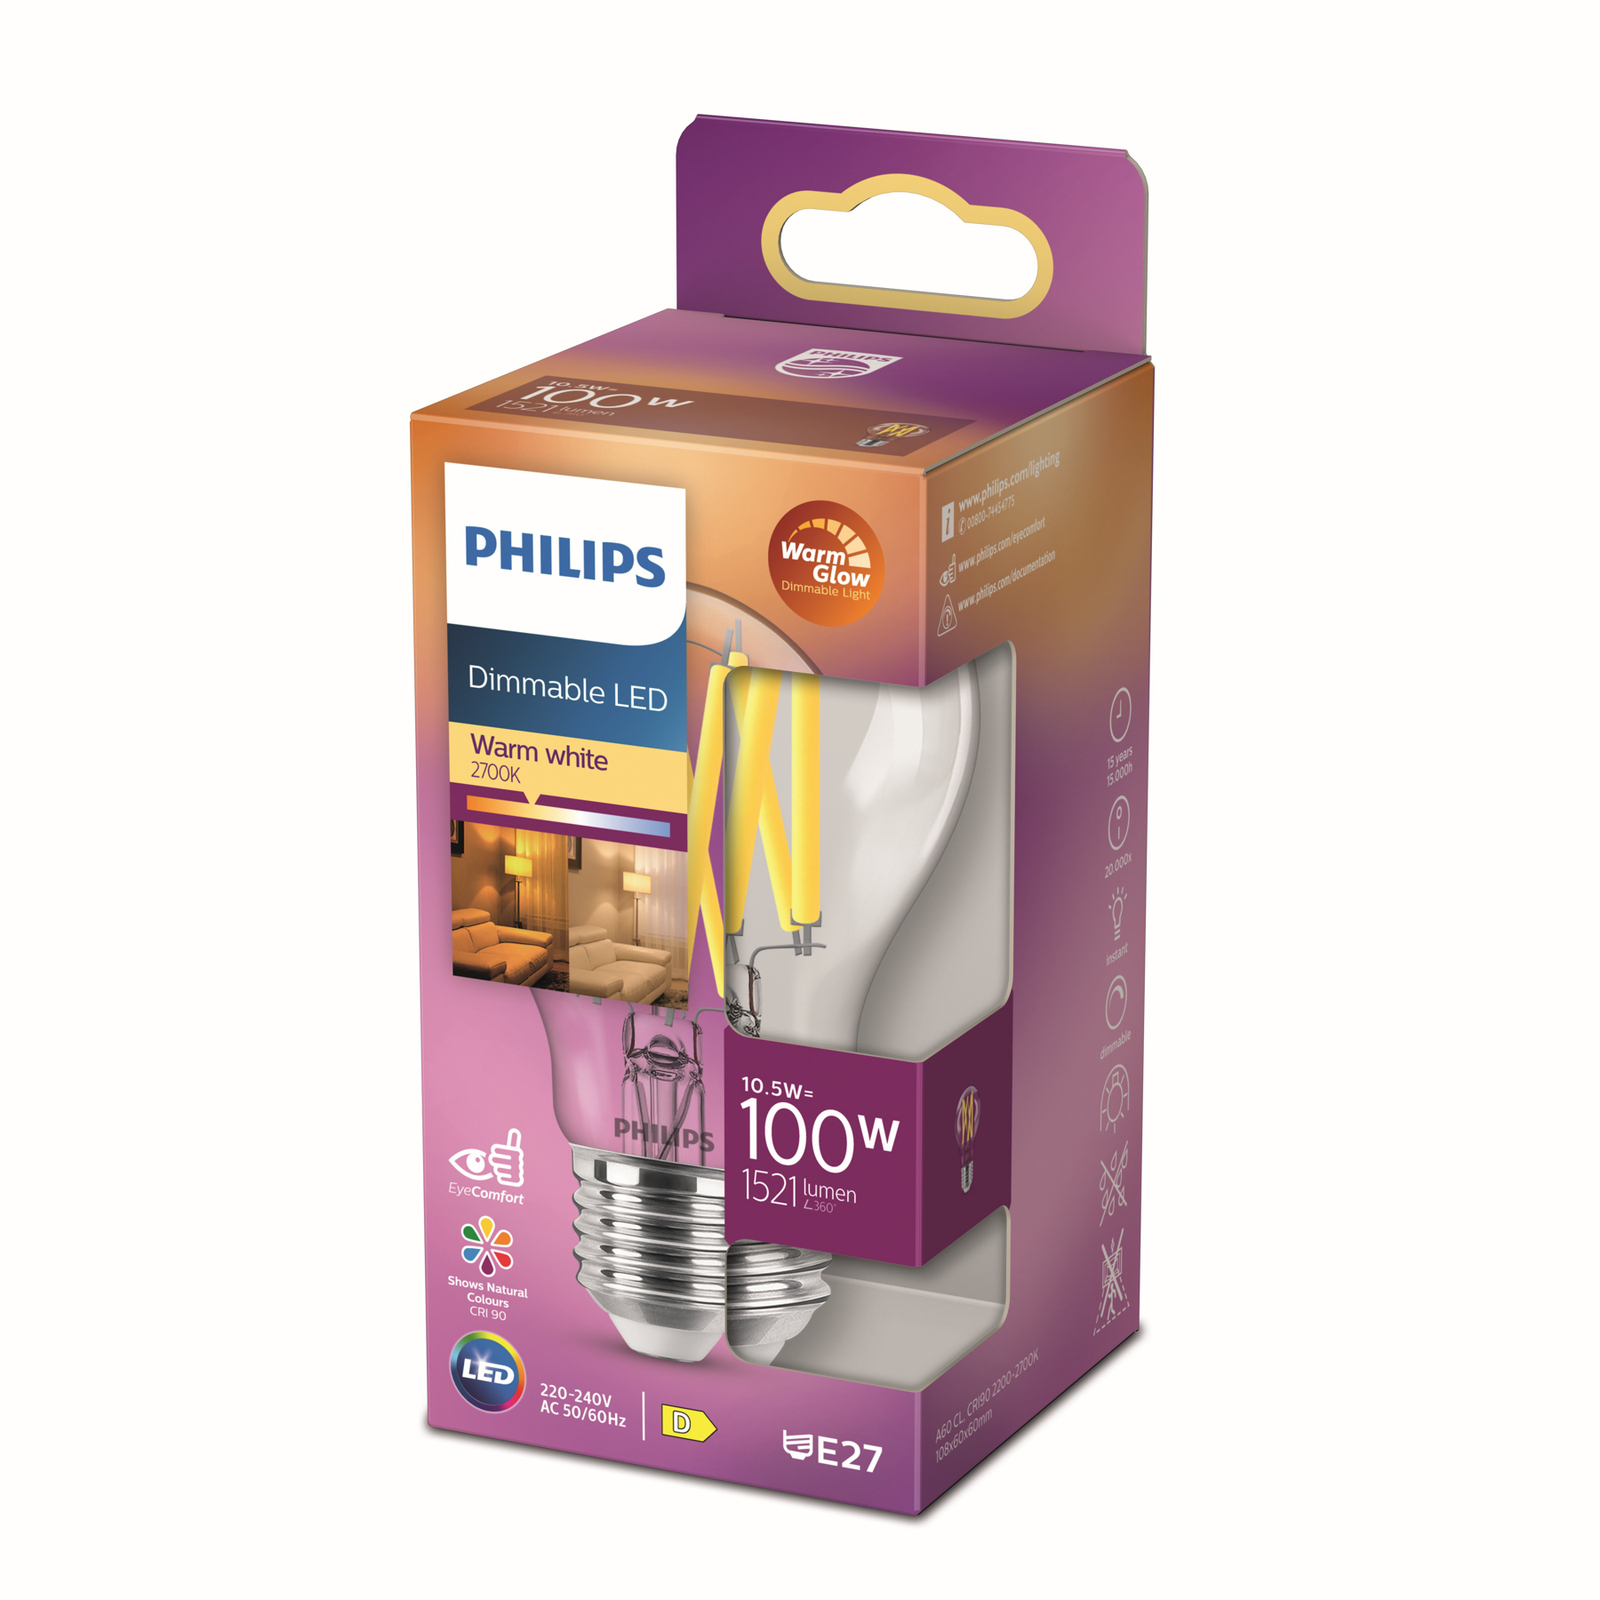 Philips LED Classic WarmGlow E27 A60 10,5W caurspīdīgs